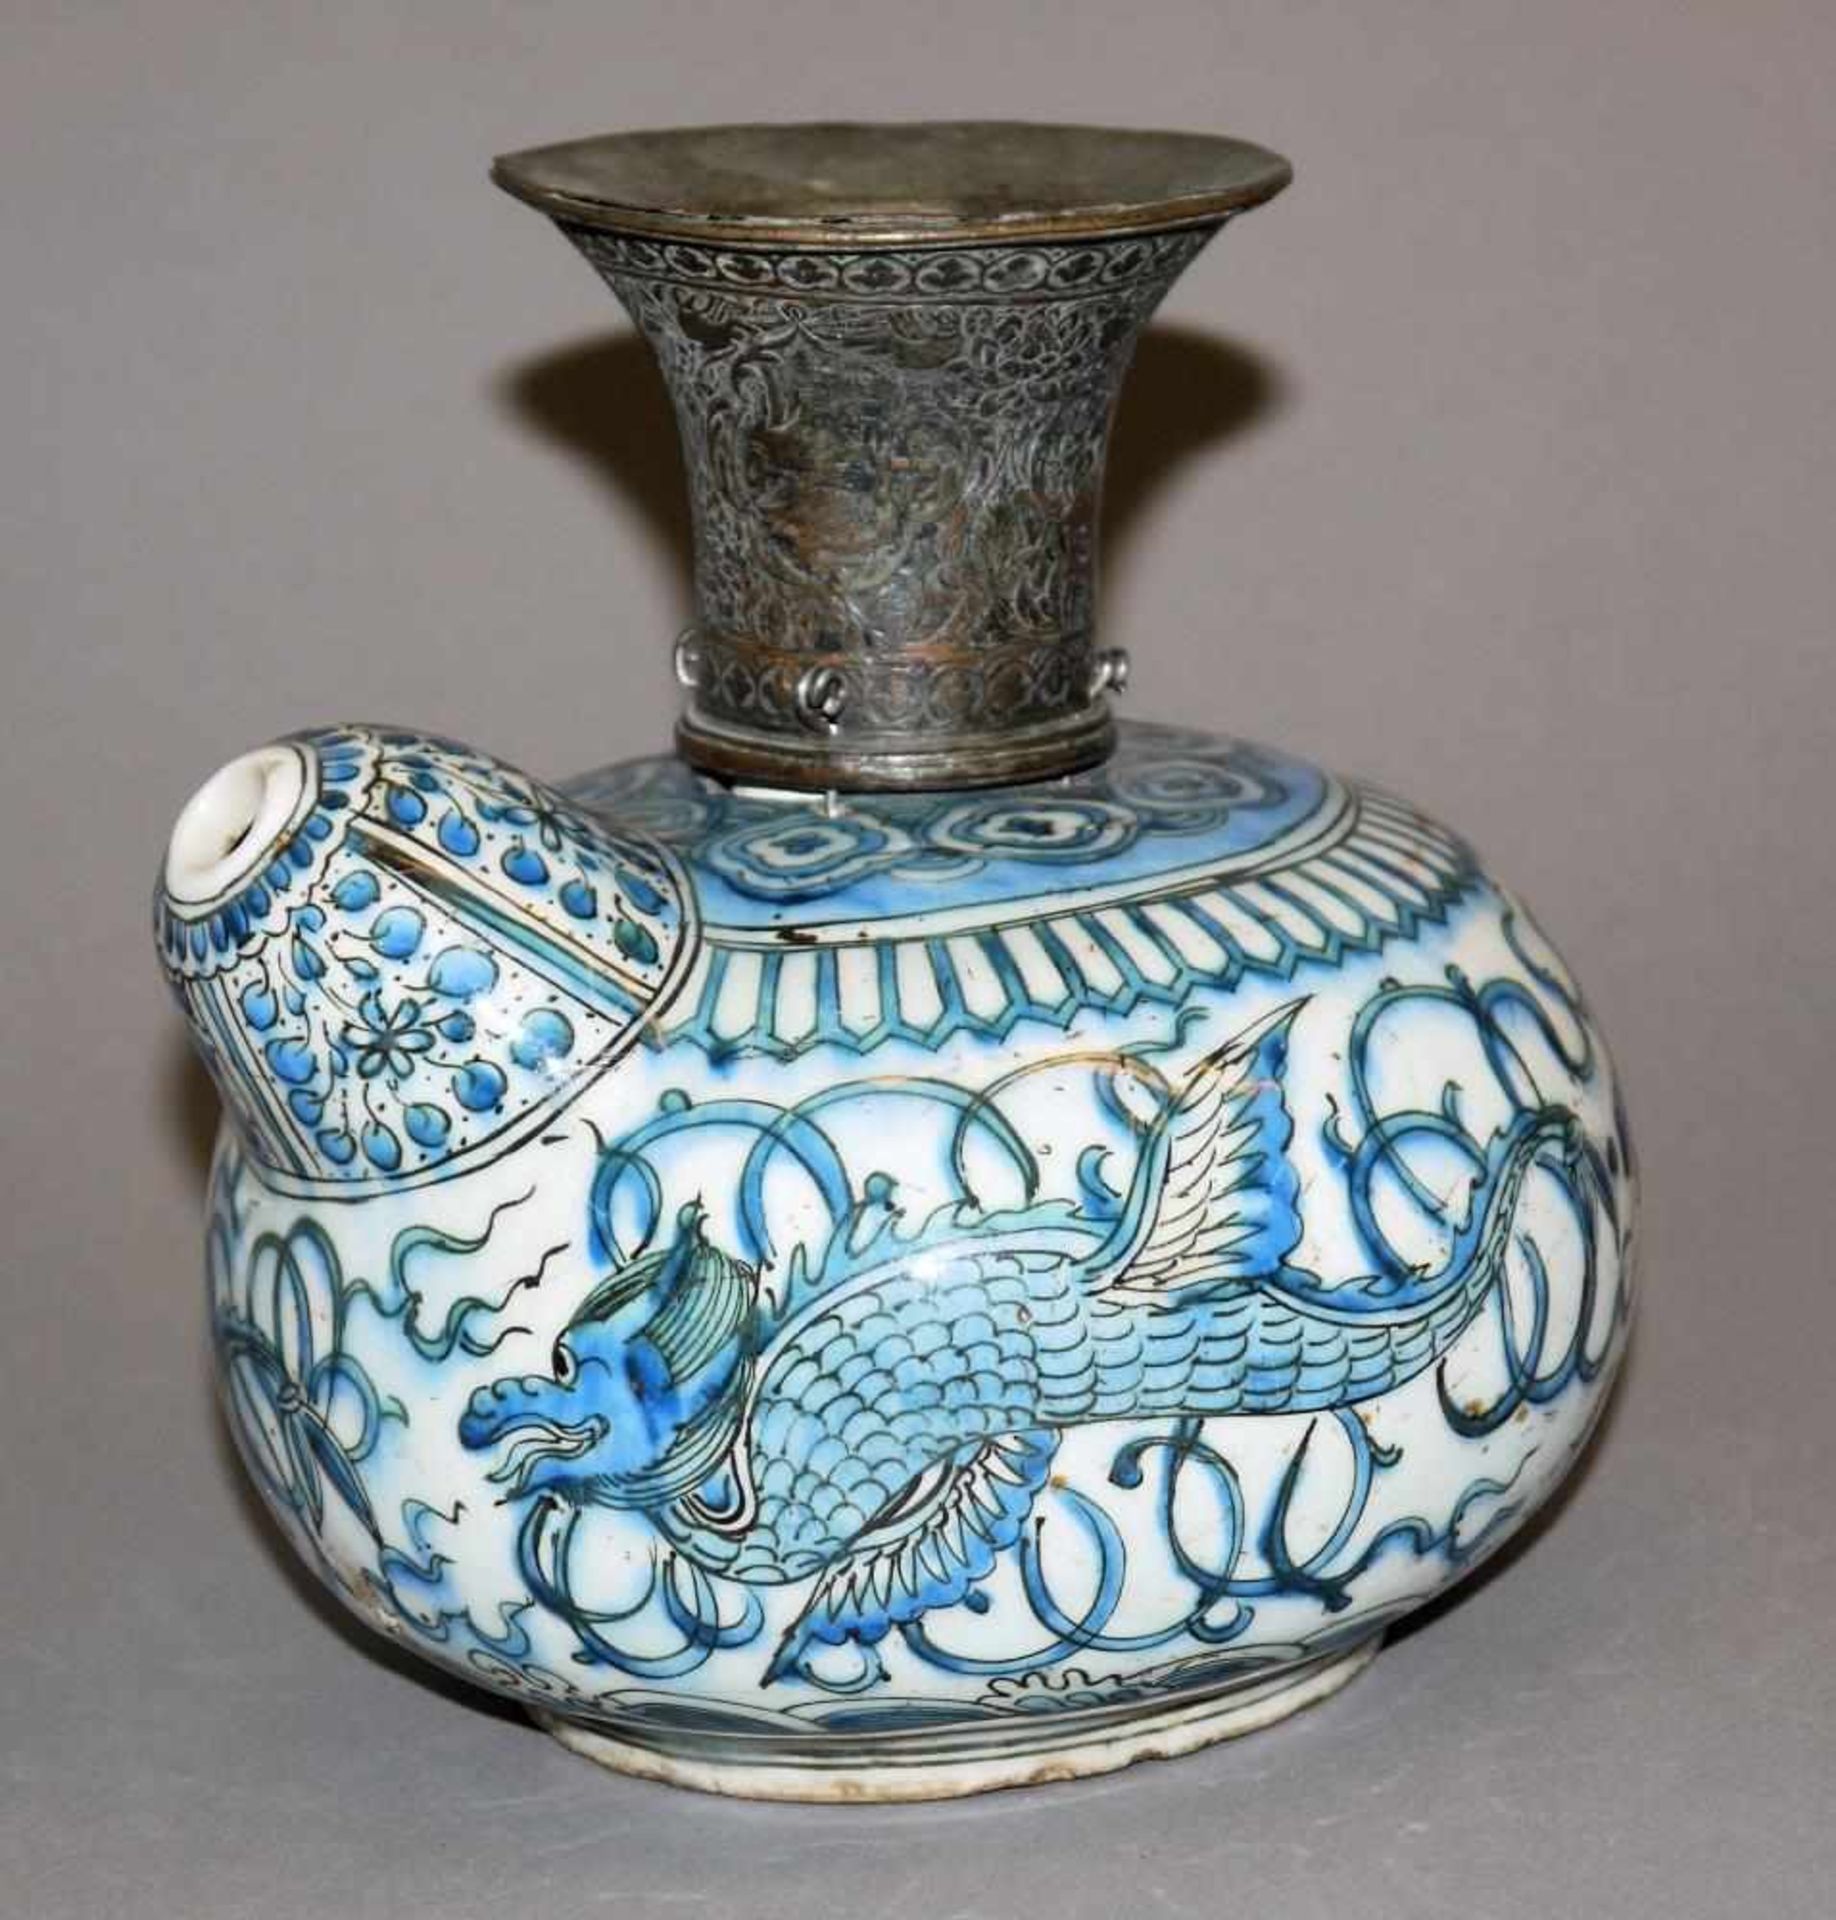 Chinoiserie-Kendi der Safawiden-Zeit, Persien 17. Jh. Blauweiß-Wassergefäß aus Steingut mit